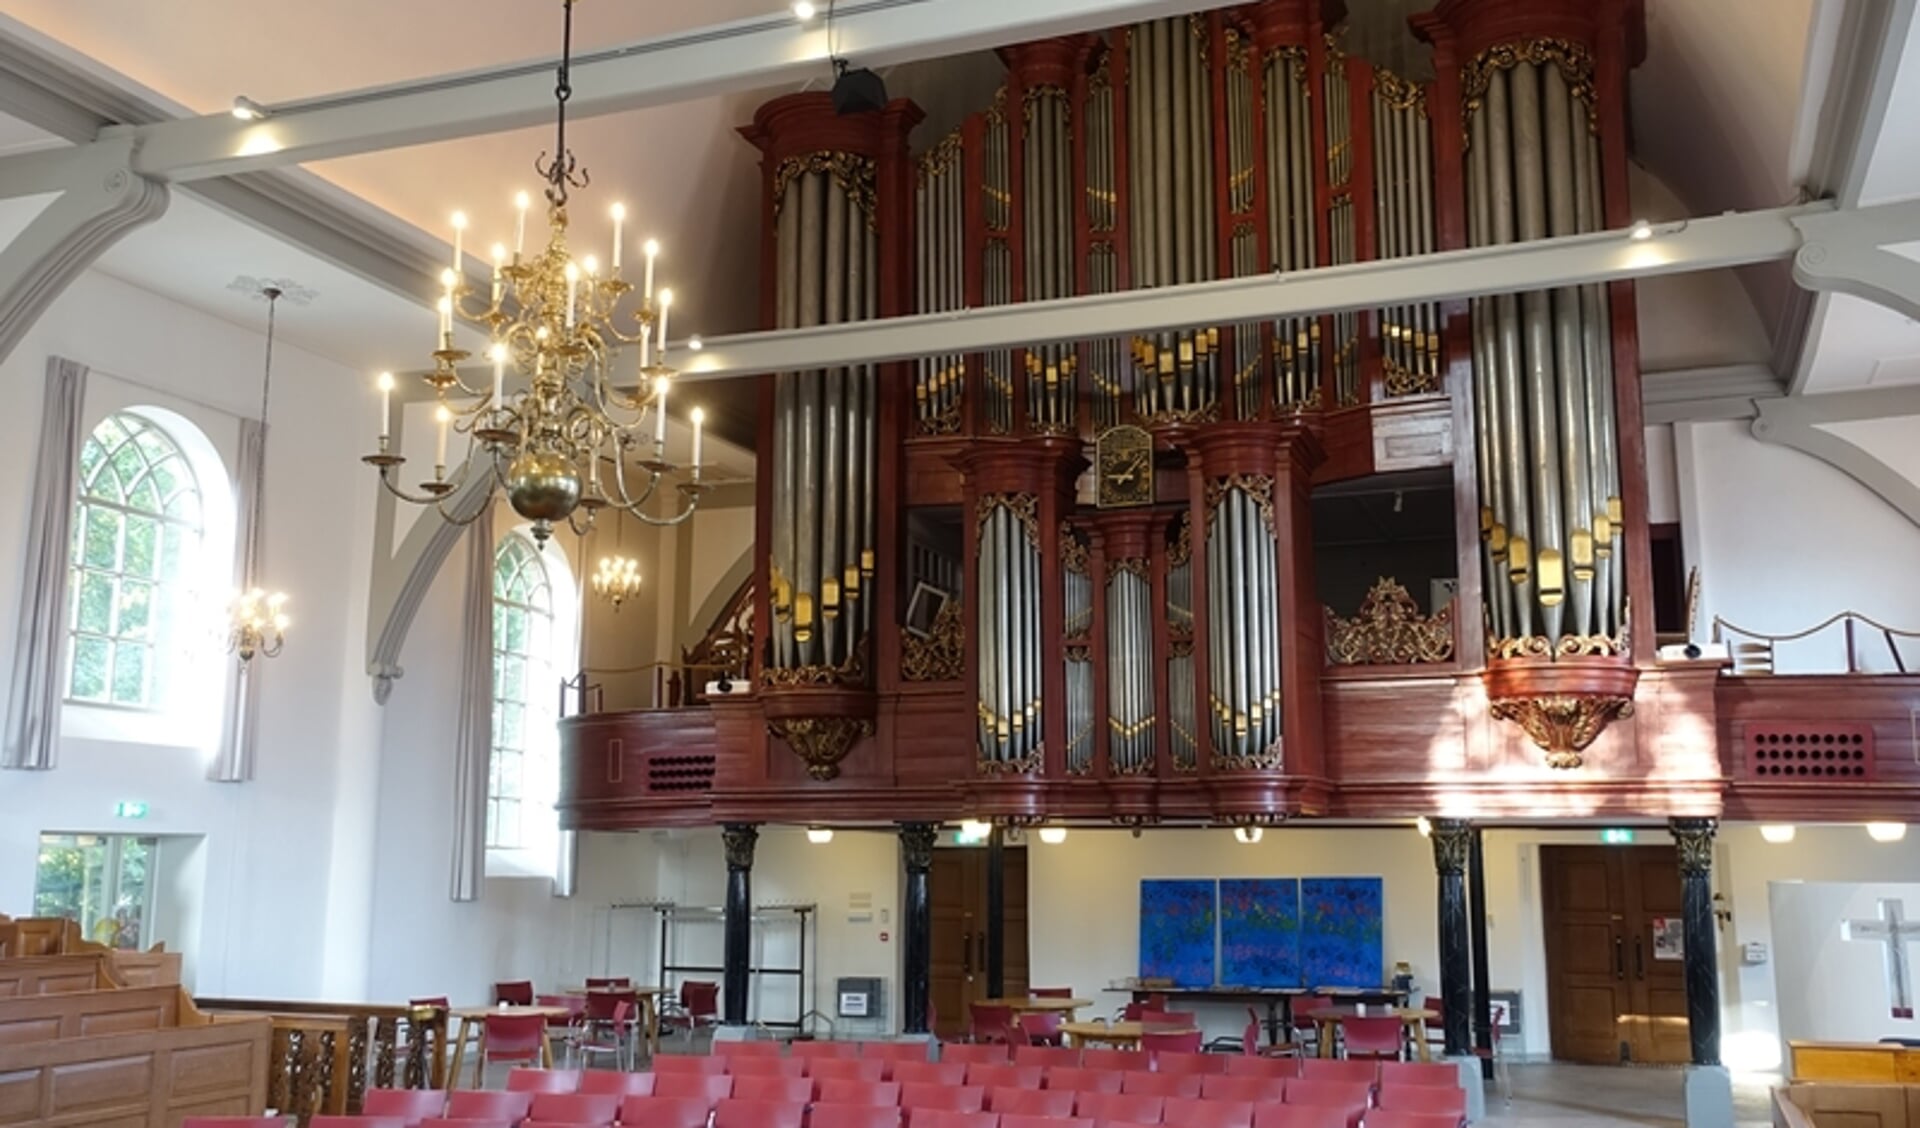 Het orgel in de Grote Kerk van Veendam